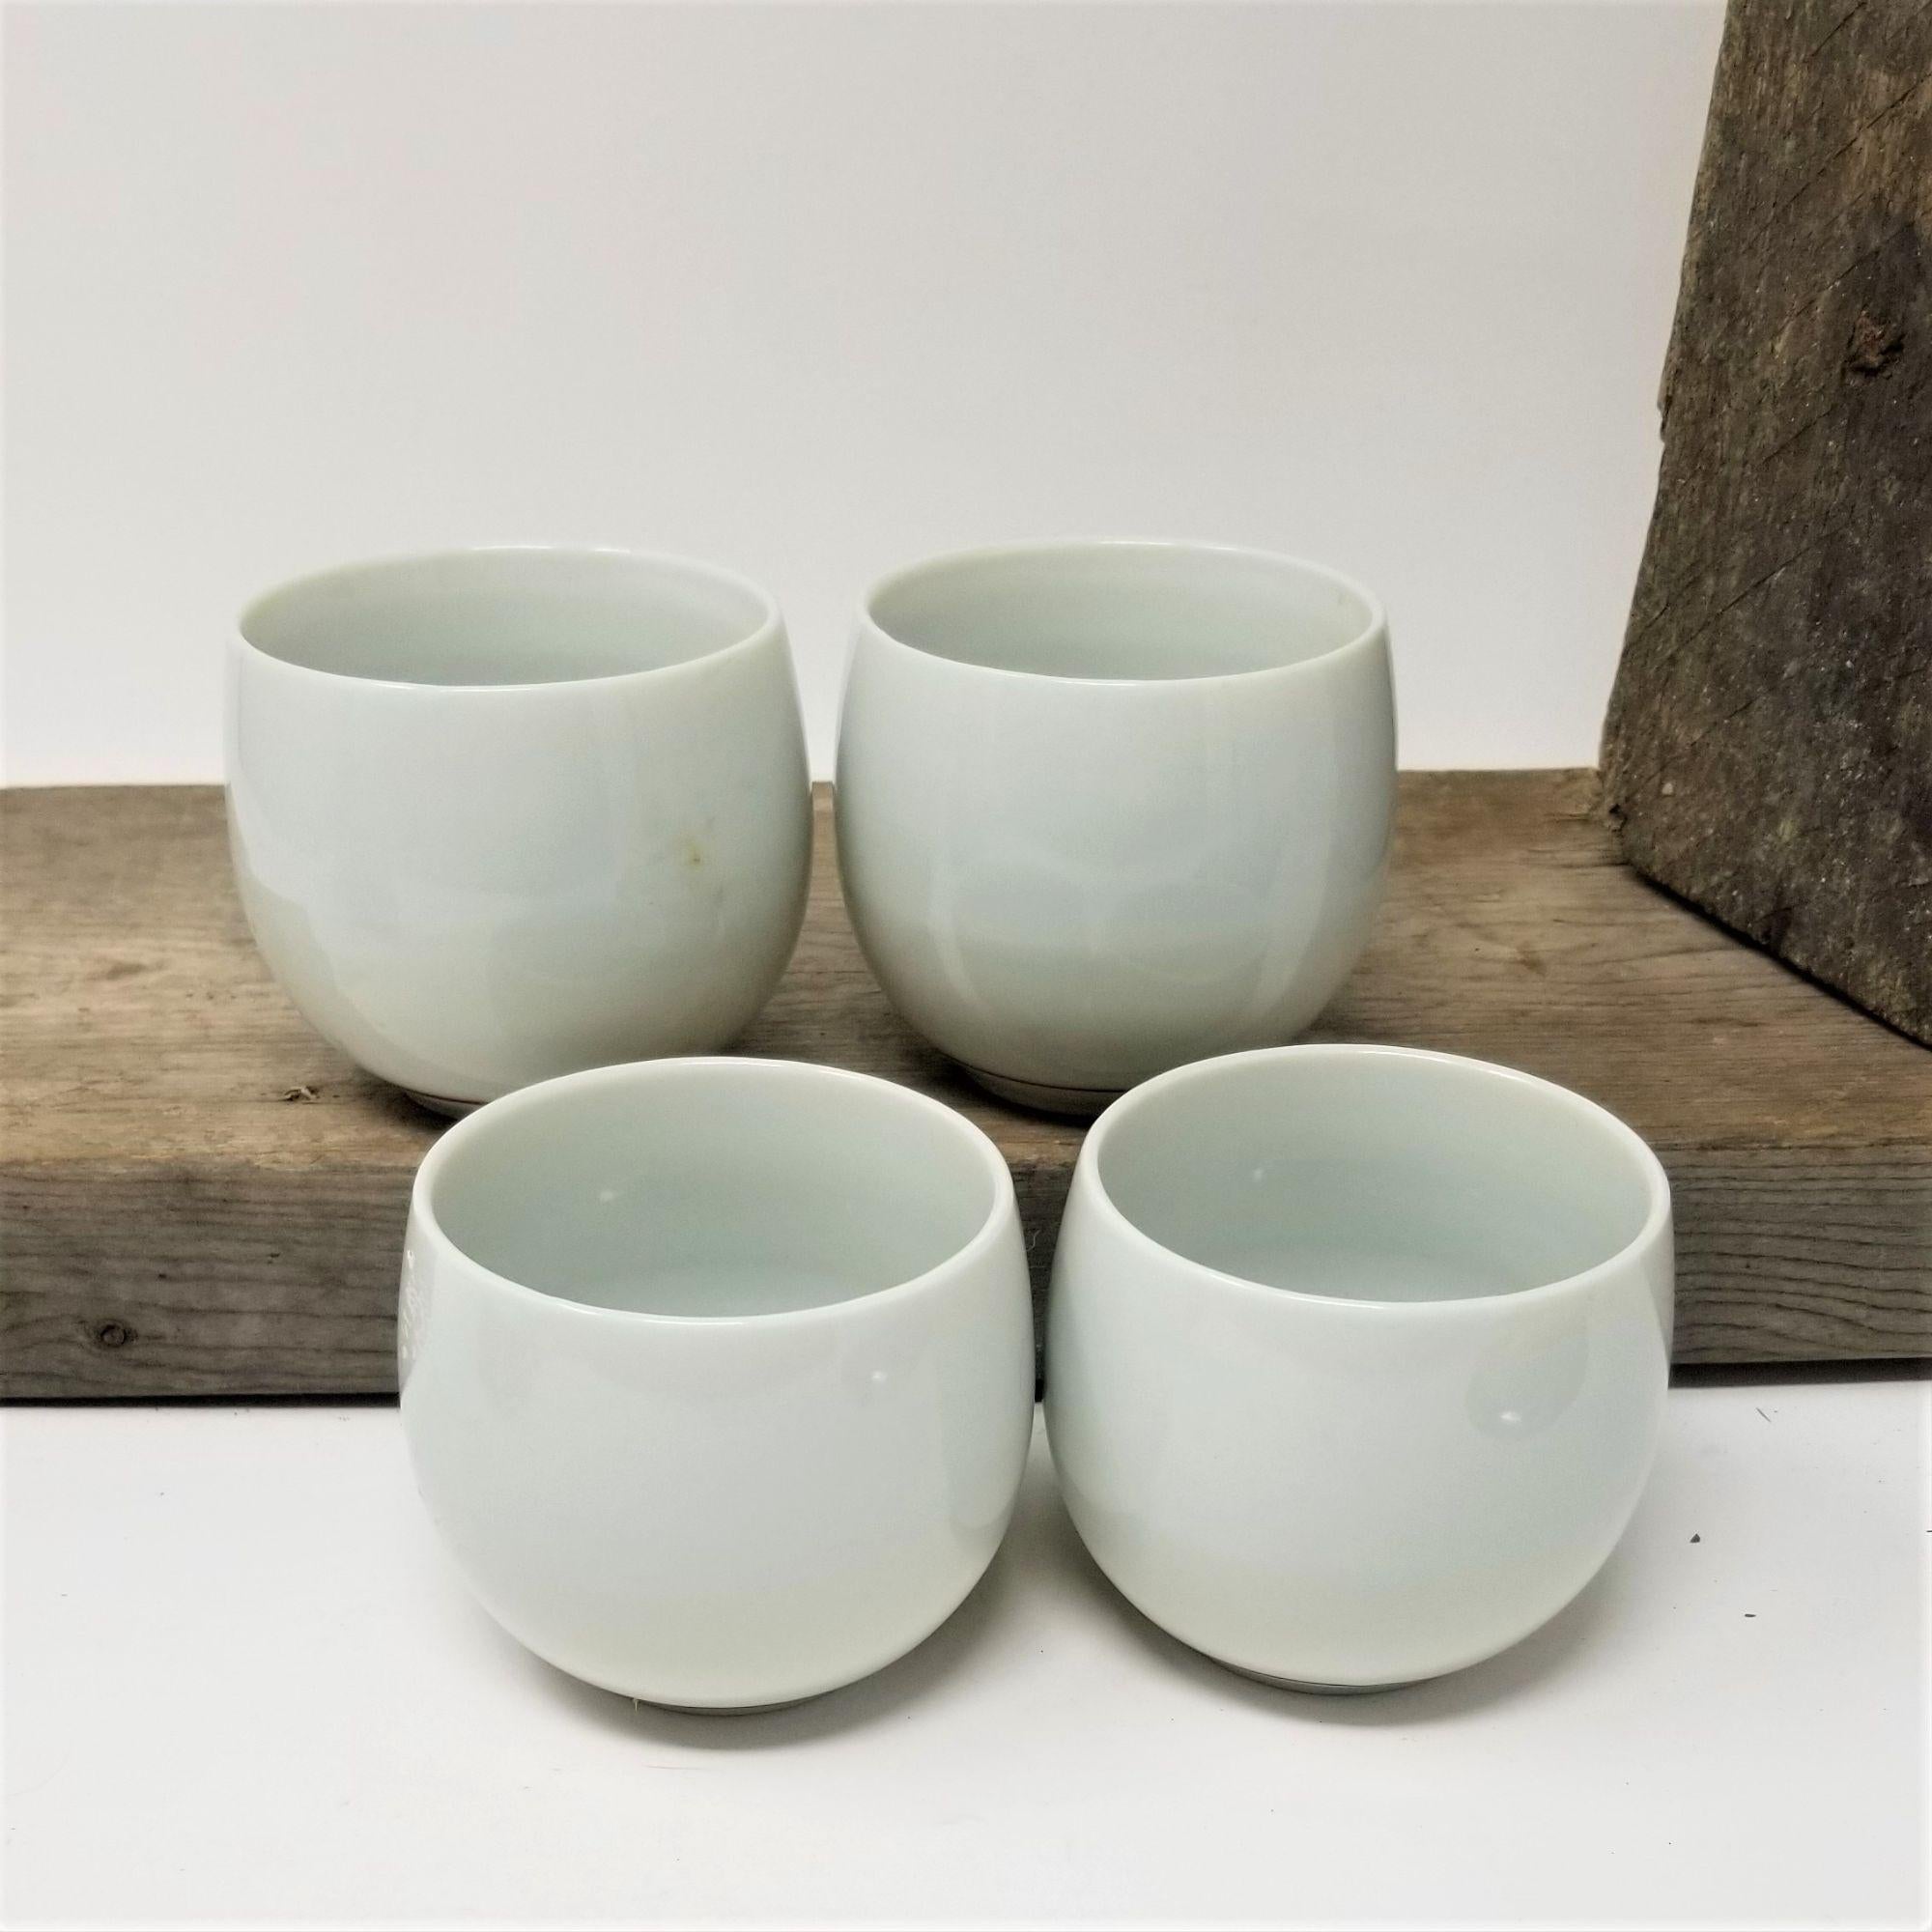 Vintage Flower Tea Cups Made in Japan